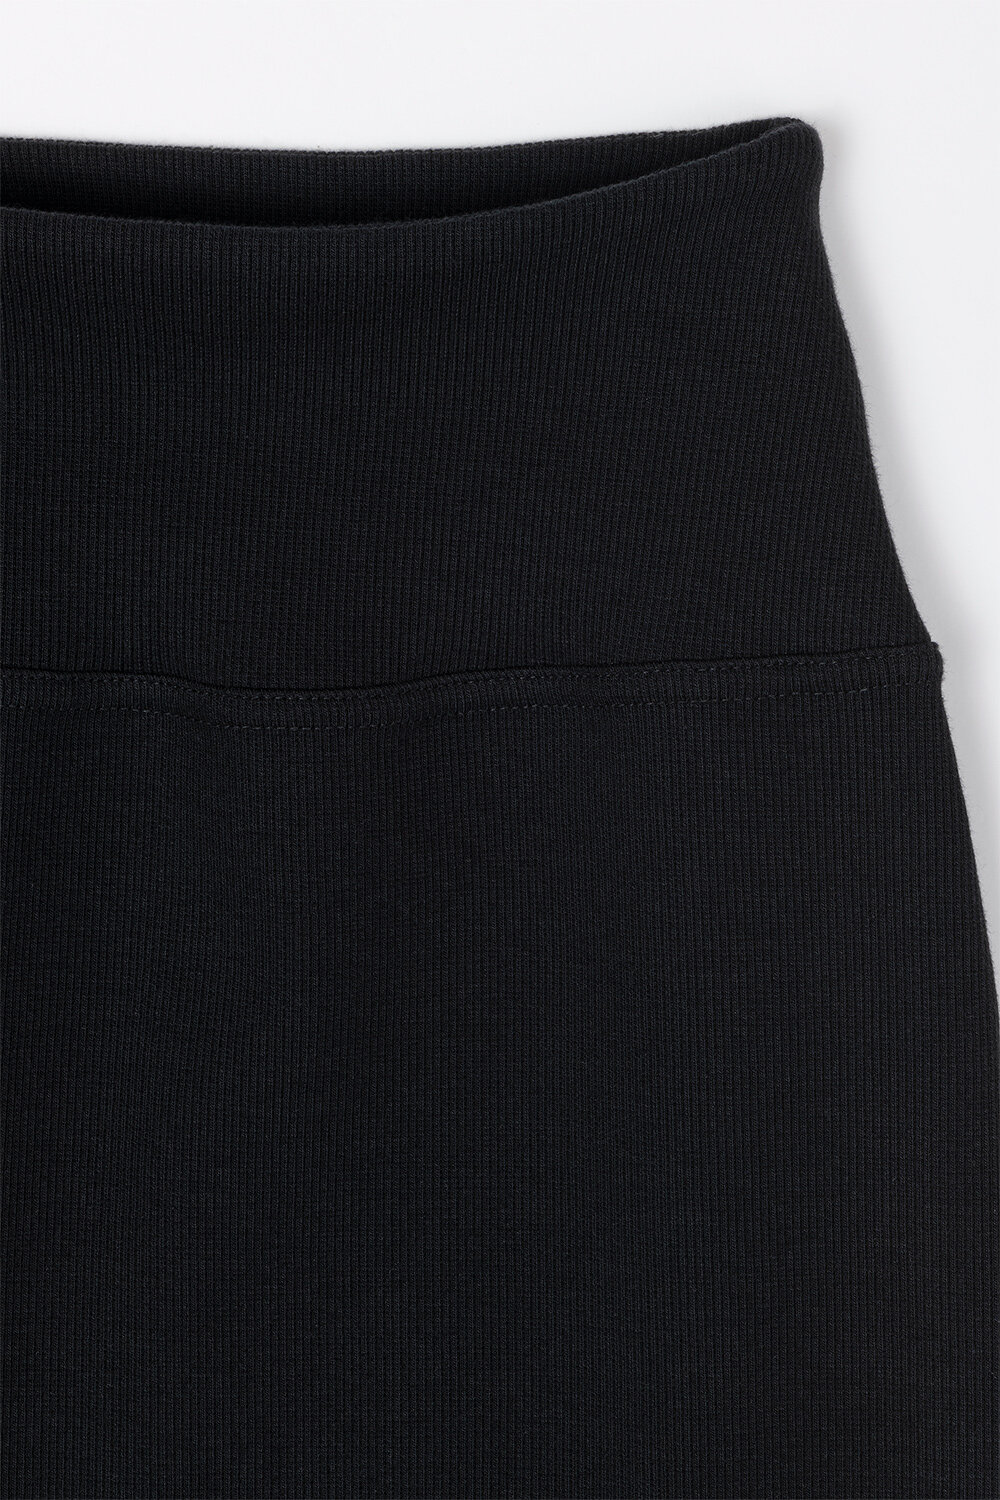 BayRun - Ołówkowa spódnica w prążek w kolorze czarnym